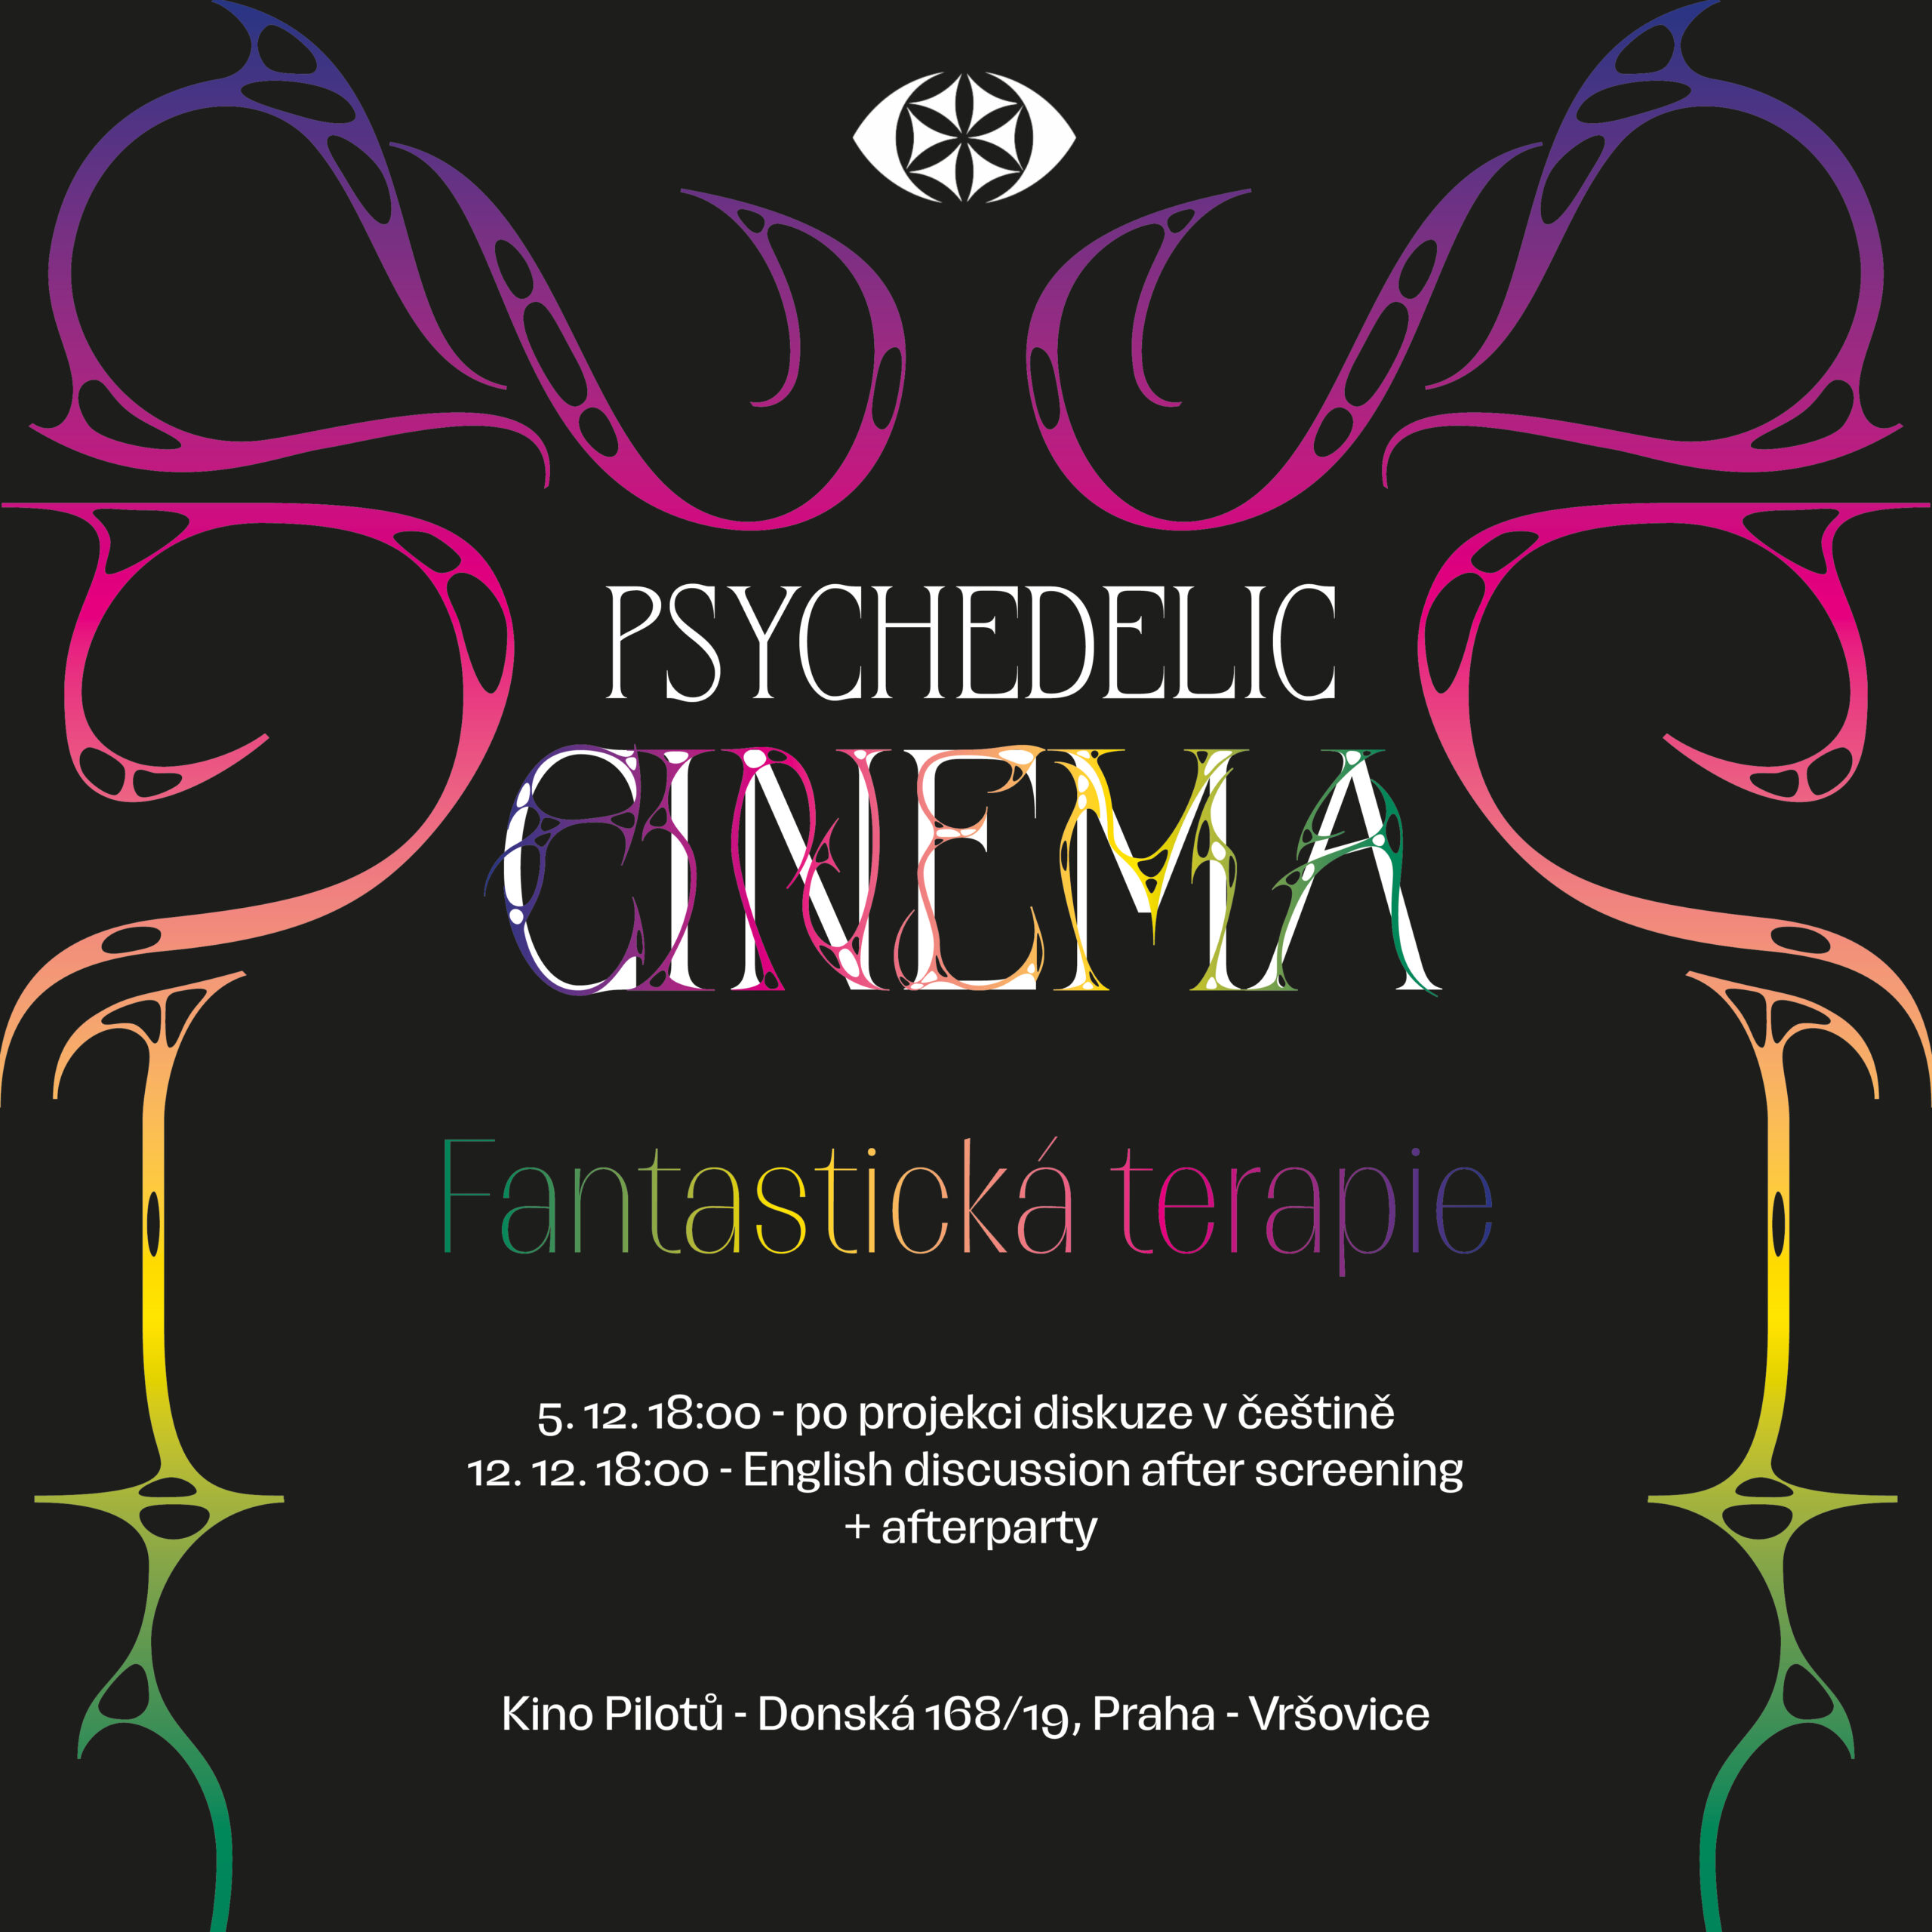 Psychedelic cinema - Fantastická terapie